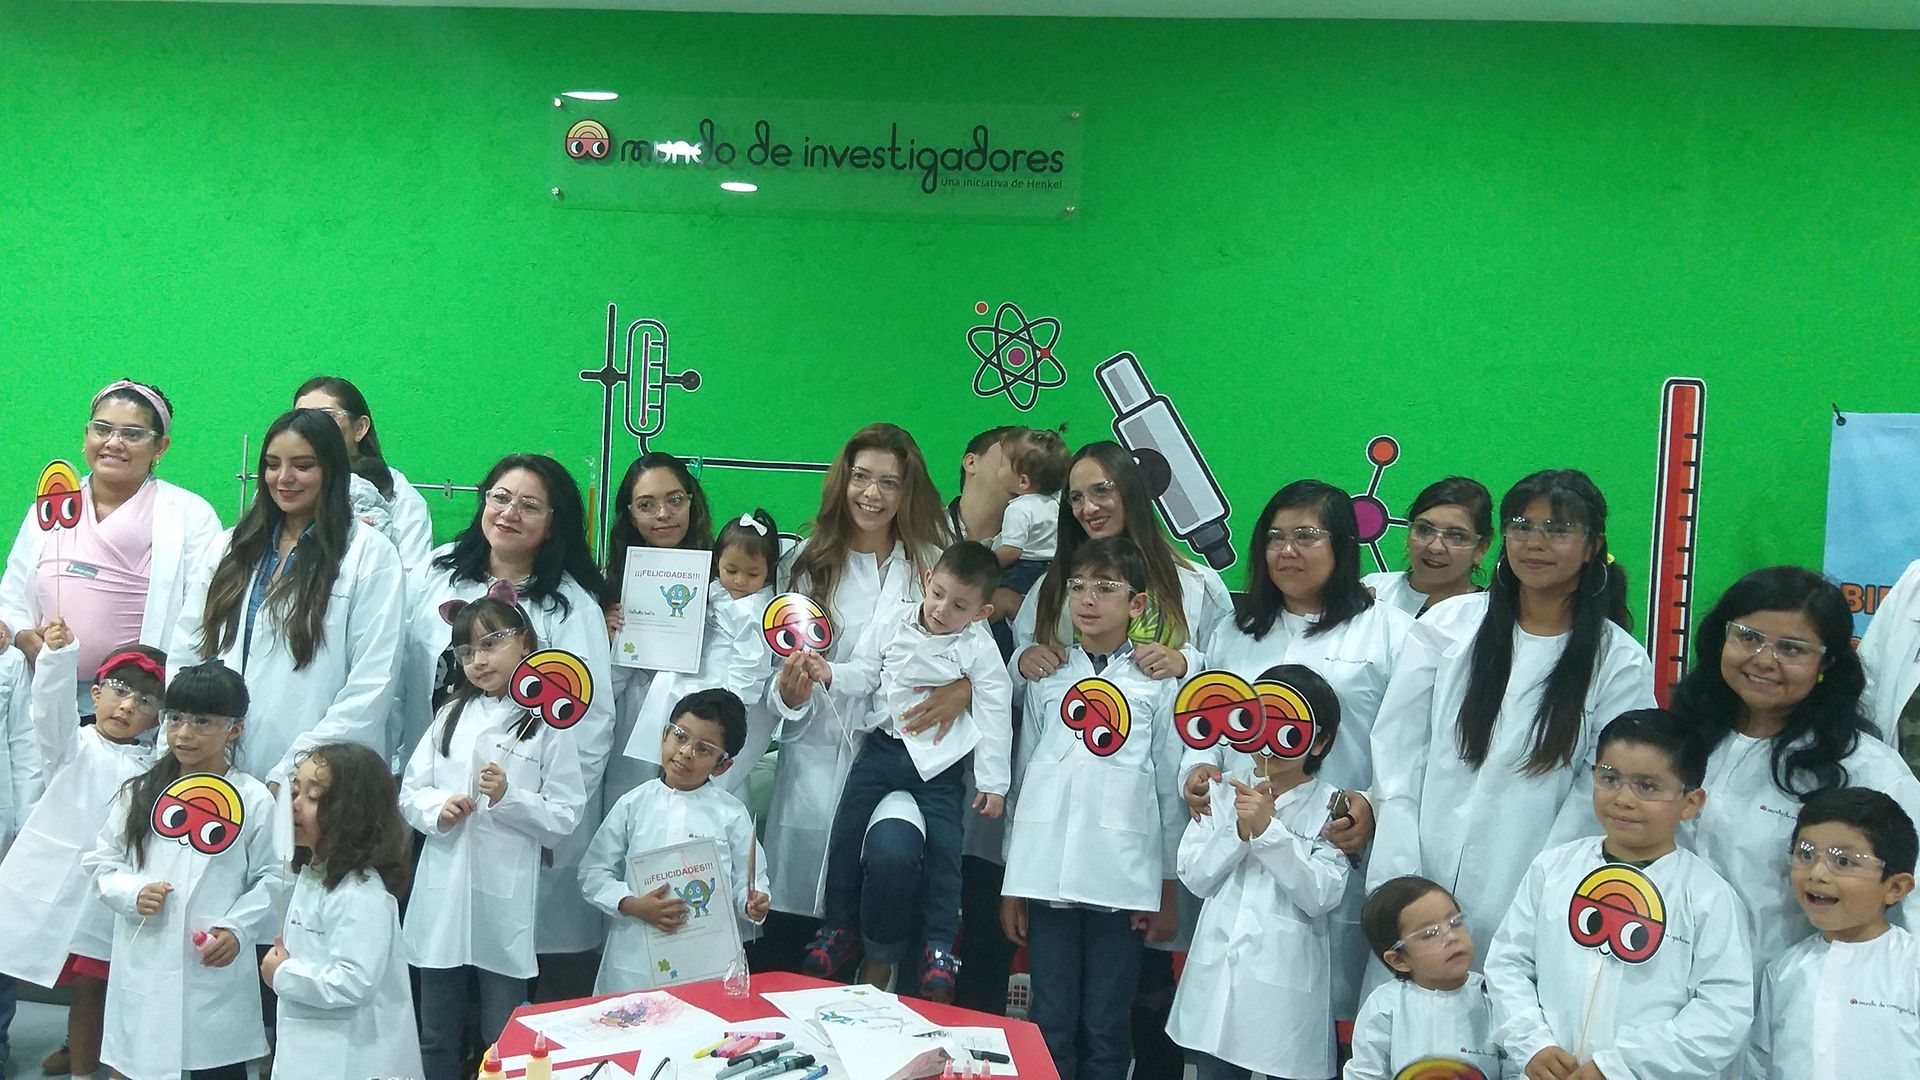 групповое фото с мексиканскими детьми в лабораторных халатах